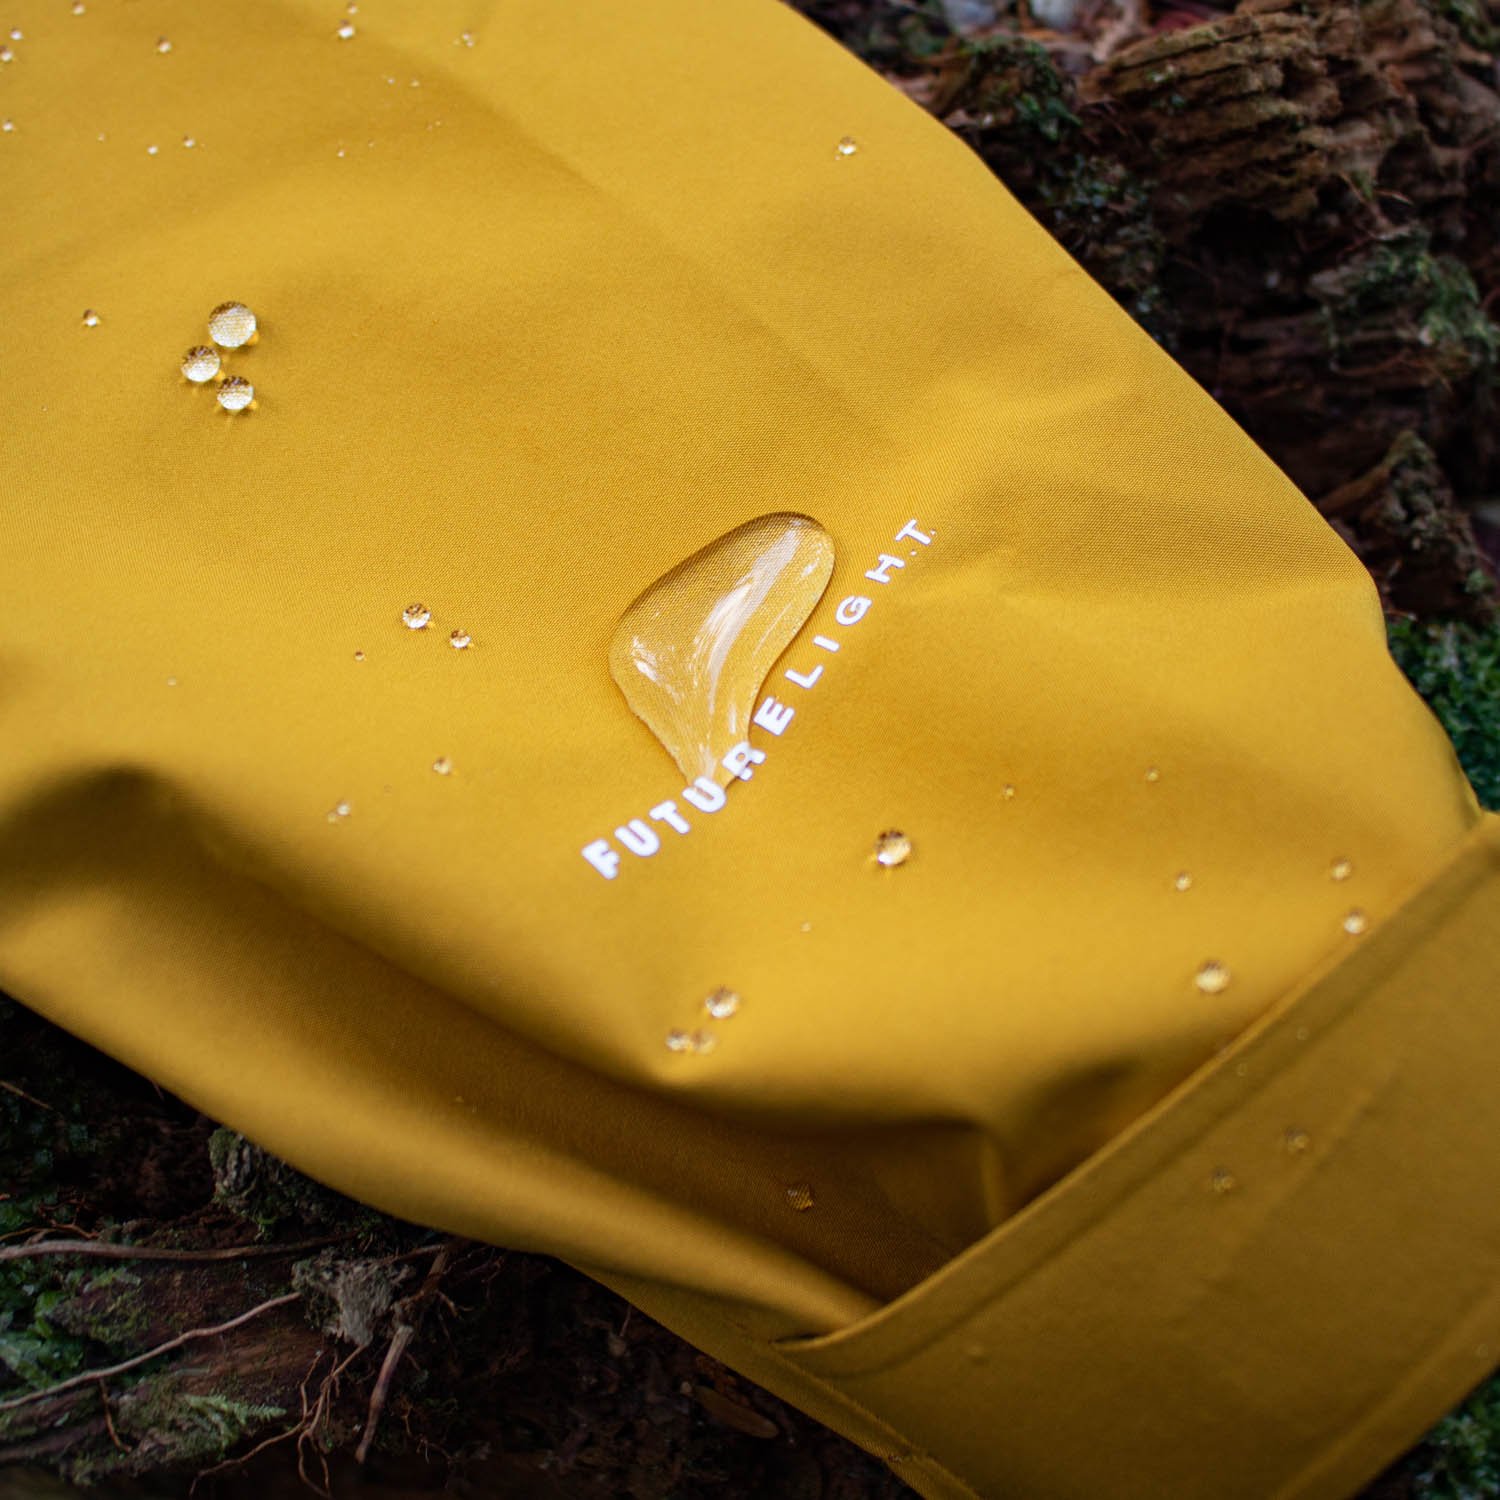 ジャケットの袖の部分に水が溜まっている様子。生地の中に一切染み込まずに、大粒の水滴となって弾かれている。